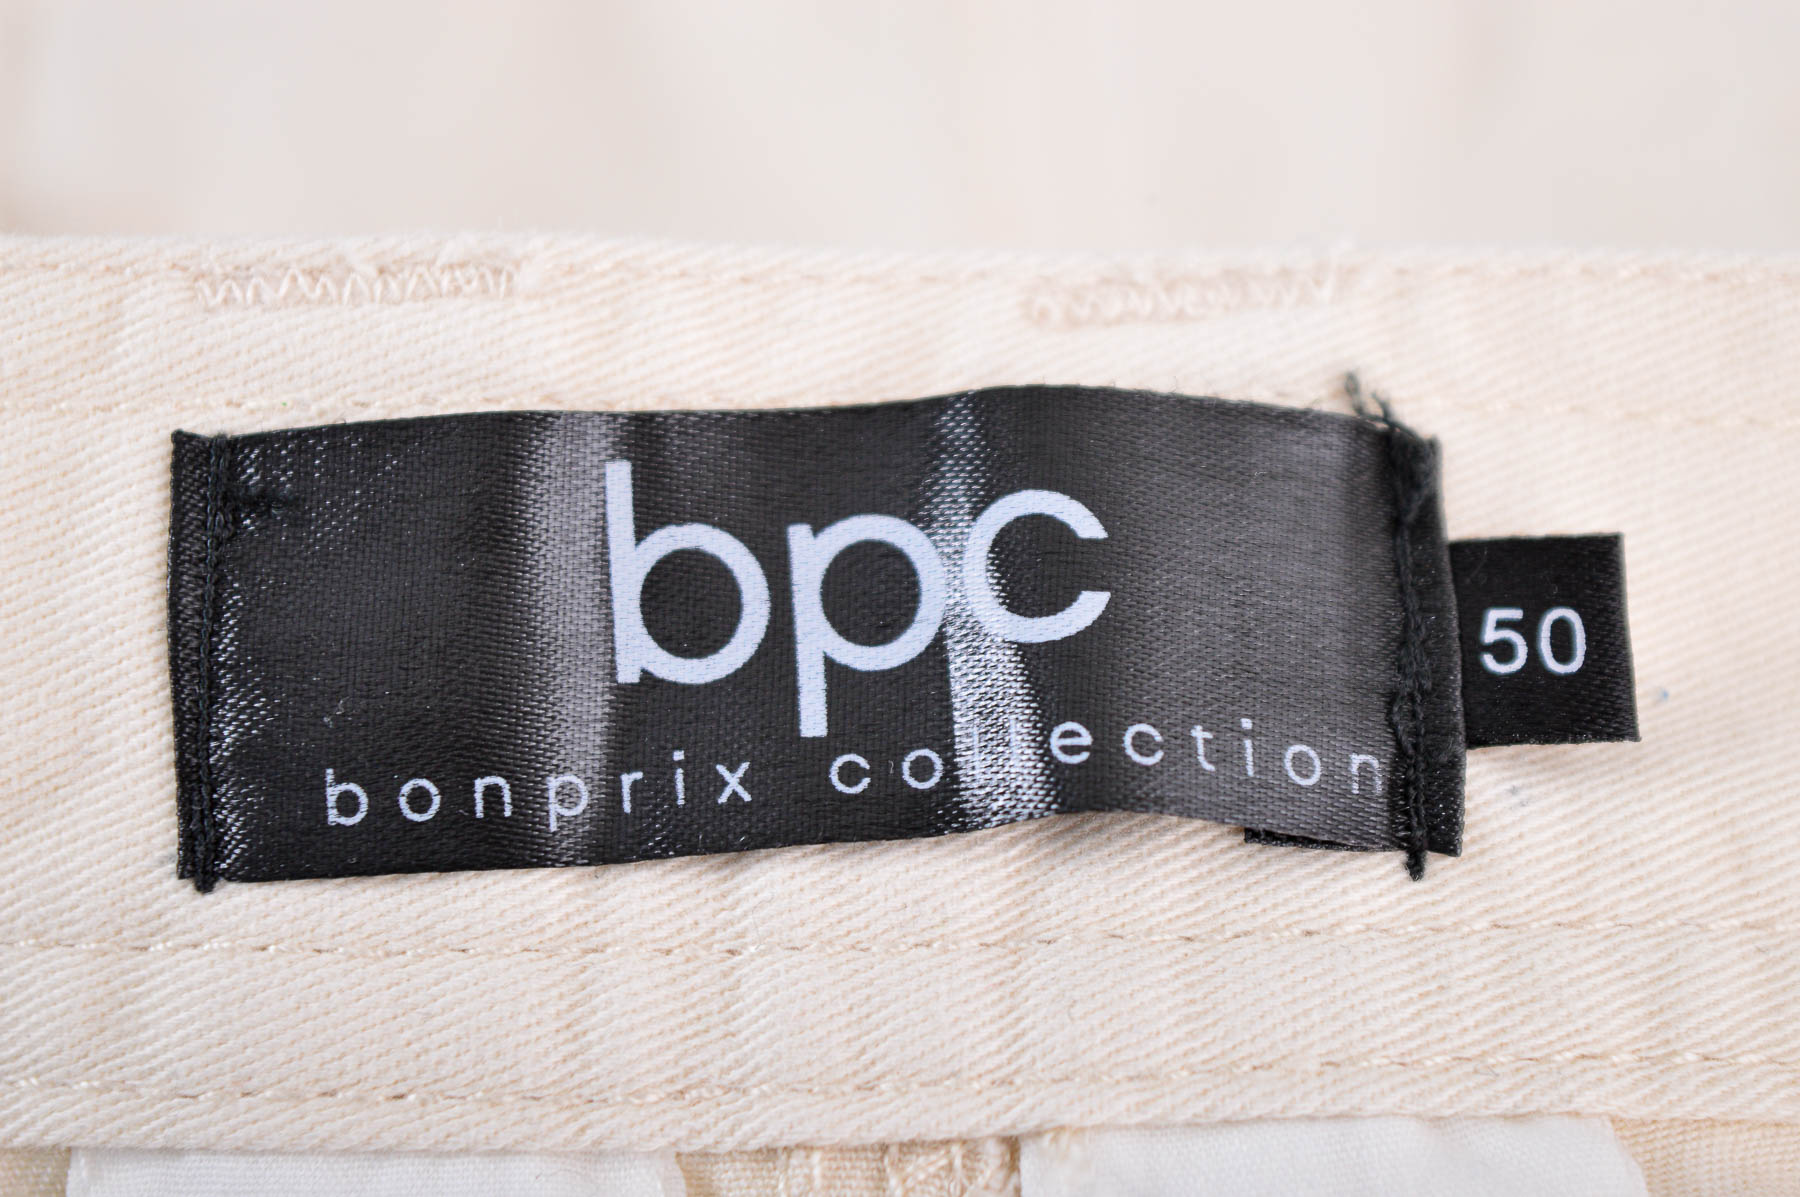 Męskie spodnie - Bpc Bonprix Collection - 2